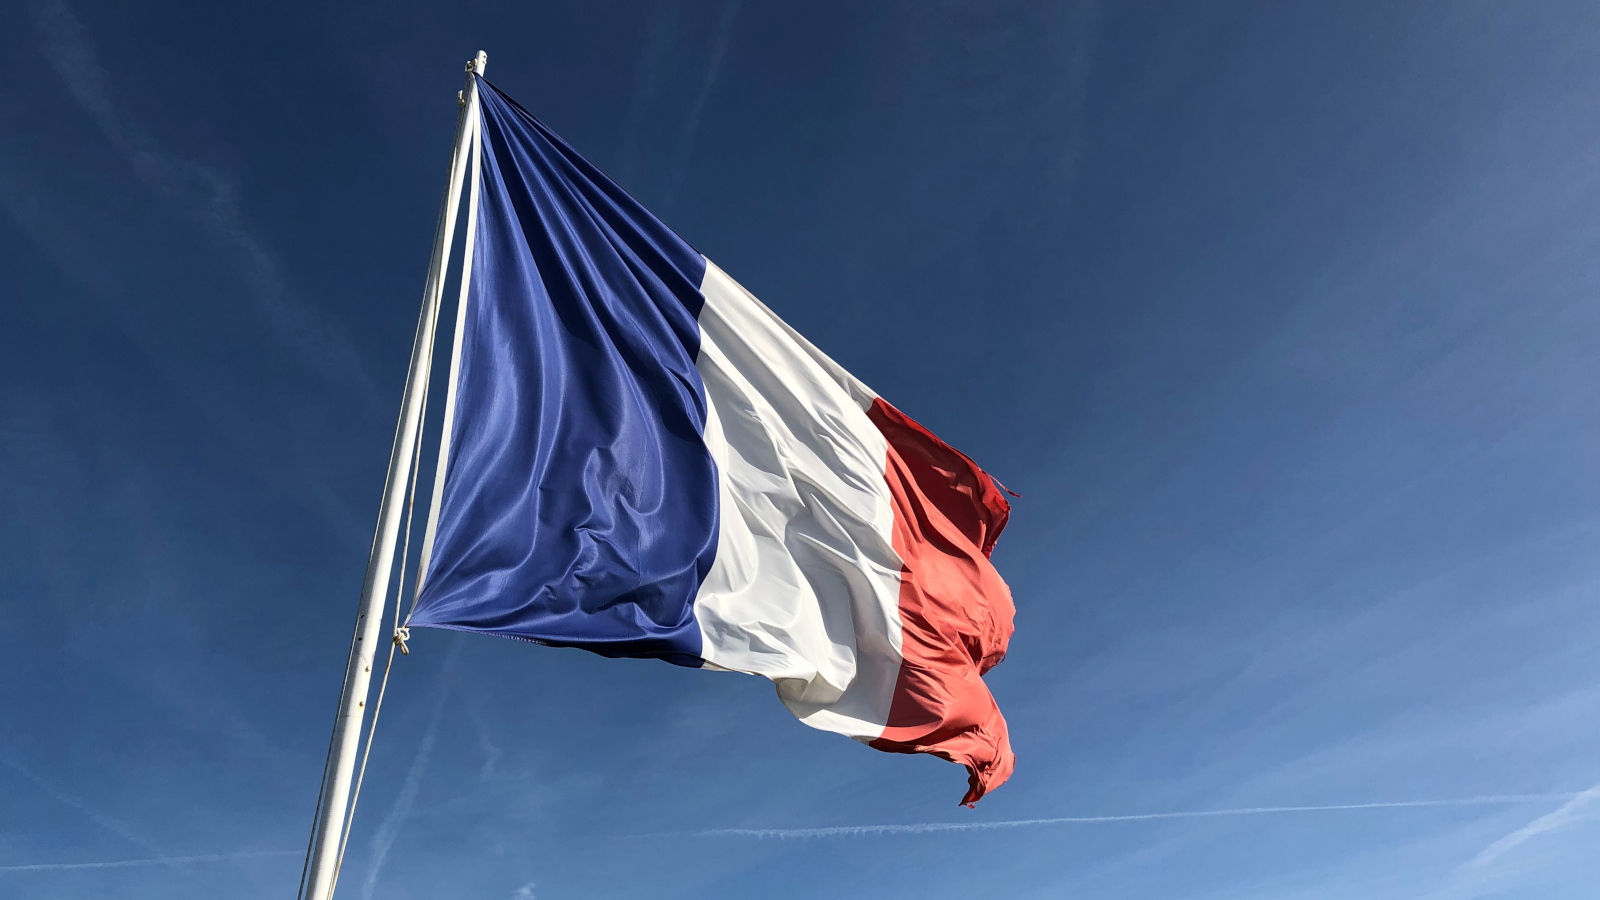 flag-of-france